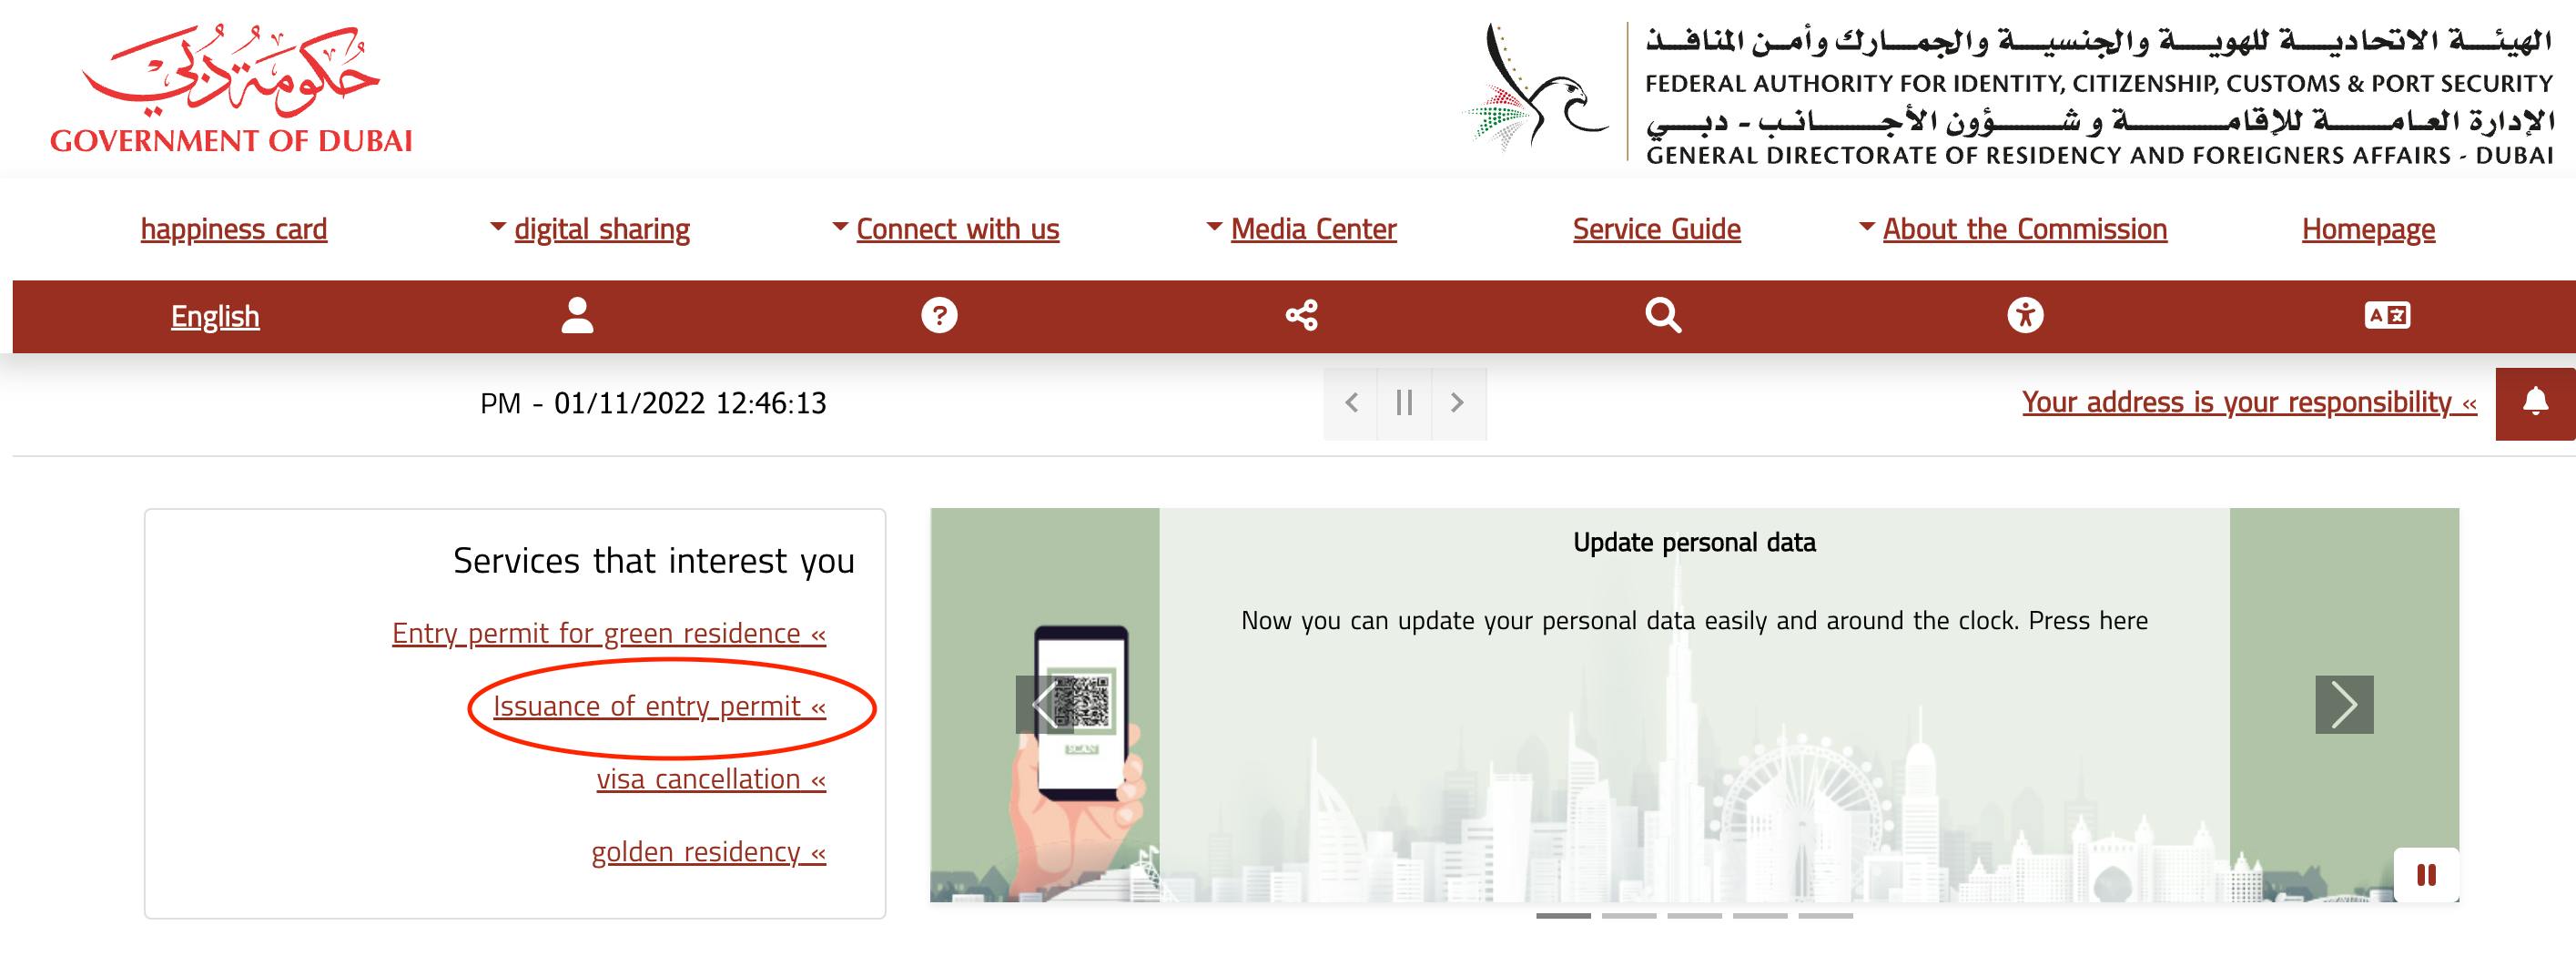 Government of Dubai e-visa portal when applying for an entry permit.